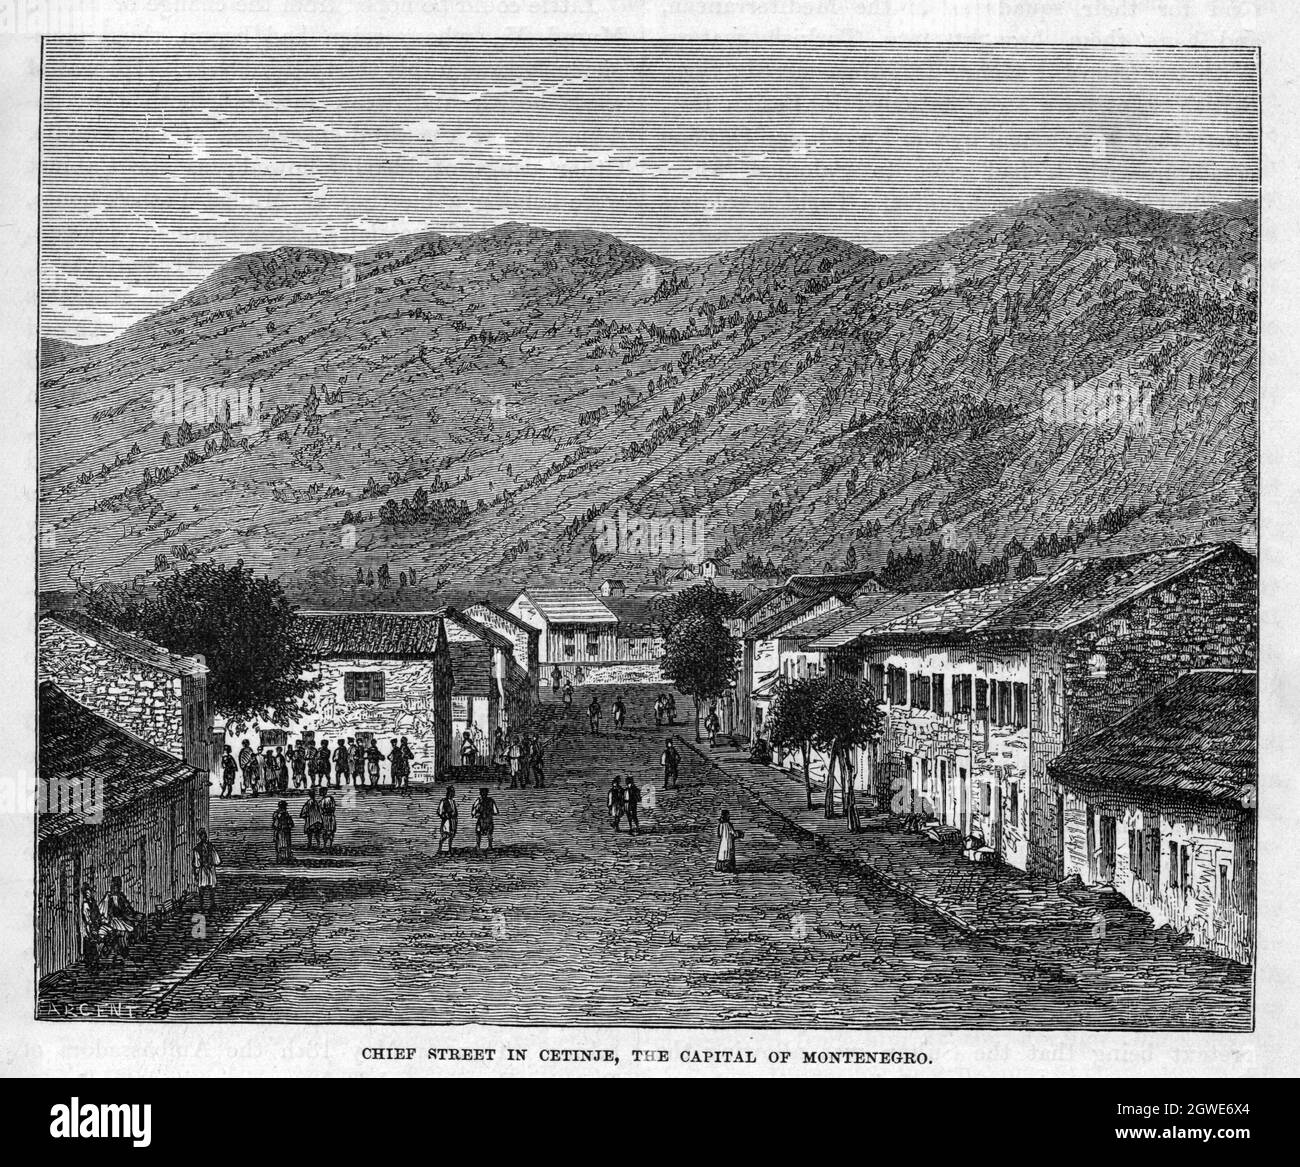 La rue principale de Cetinje, capitale du Monténégro, vers 1876. Banque D'Images